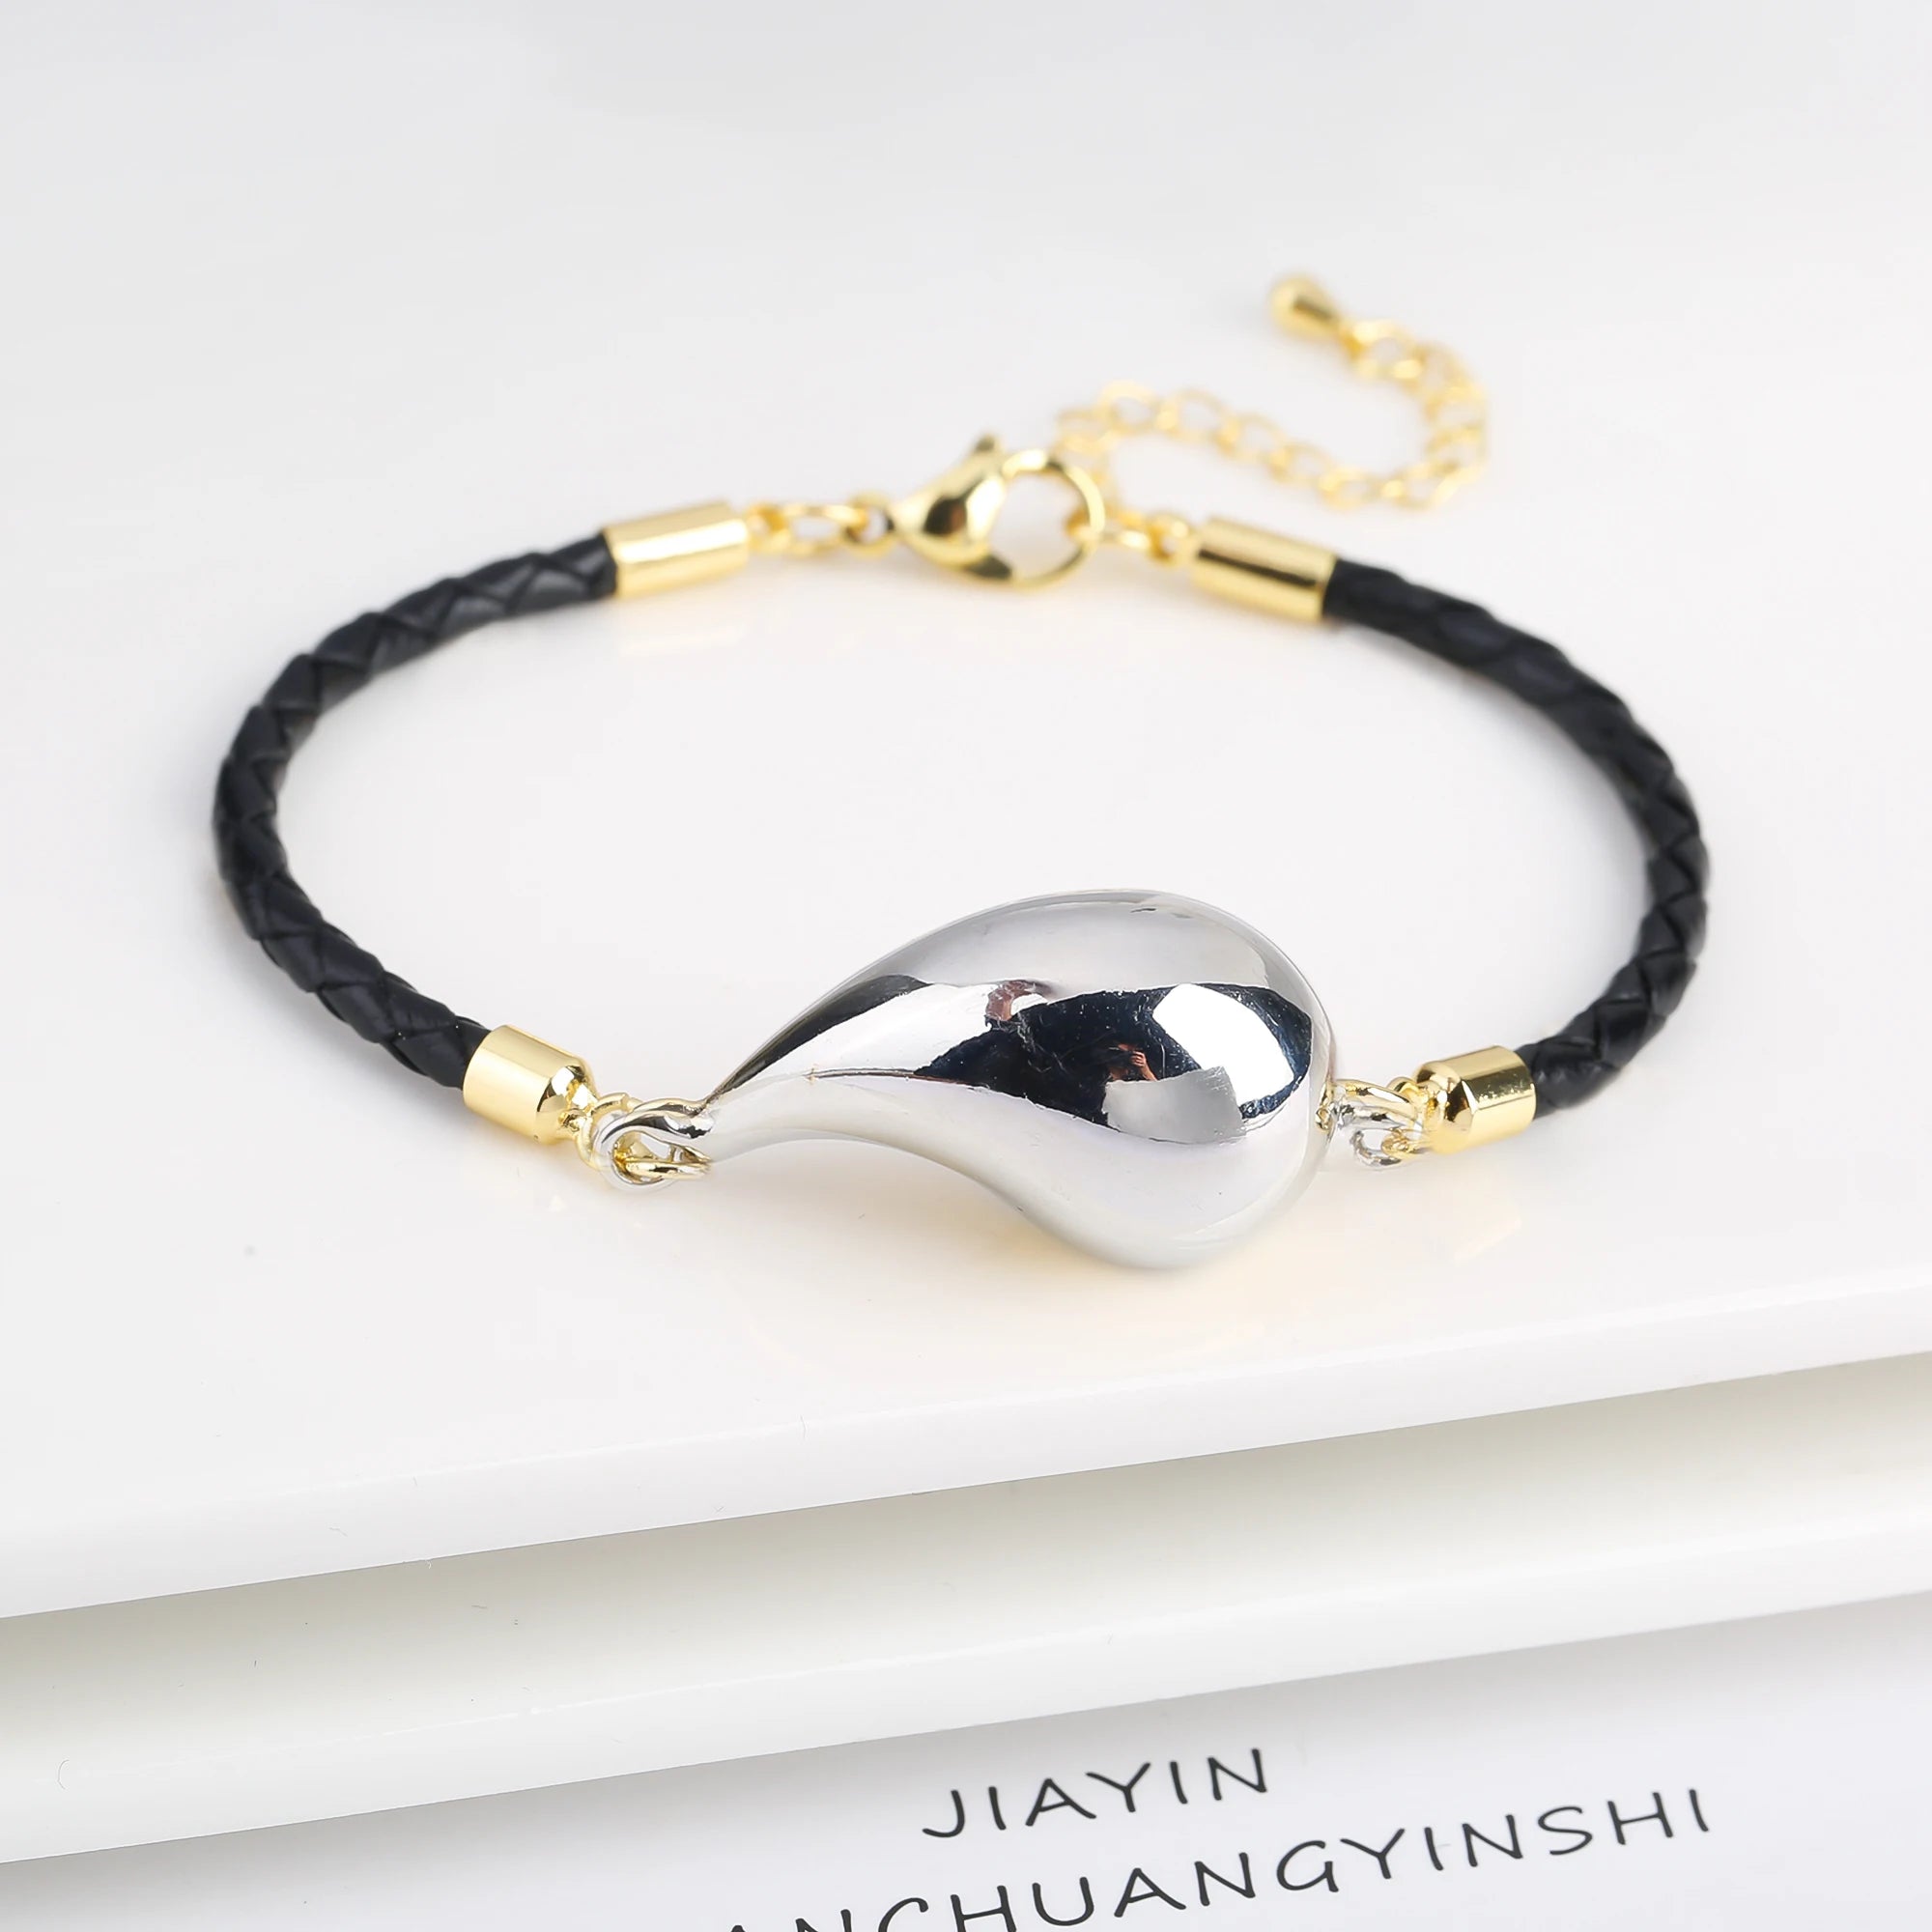 Femlion Genuine Leather Water Drop Bracelet for Women - Adjustable Daily Wear Jewelry